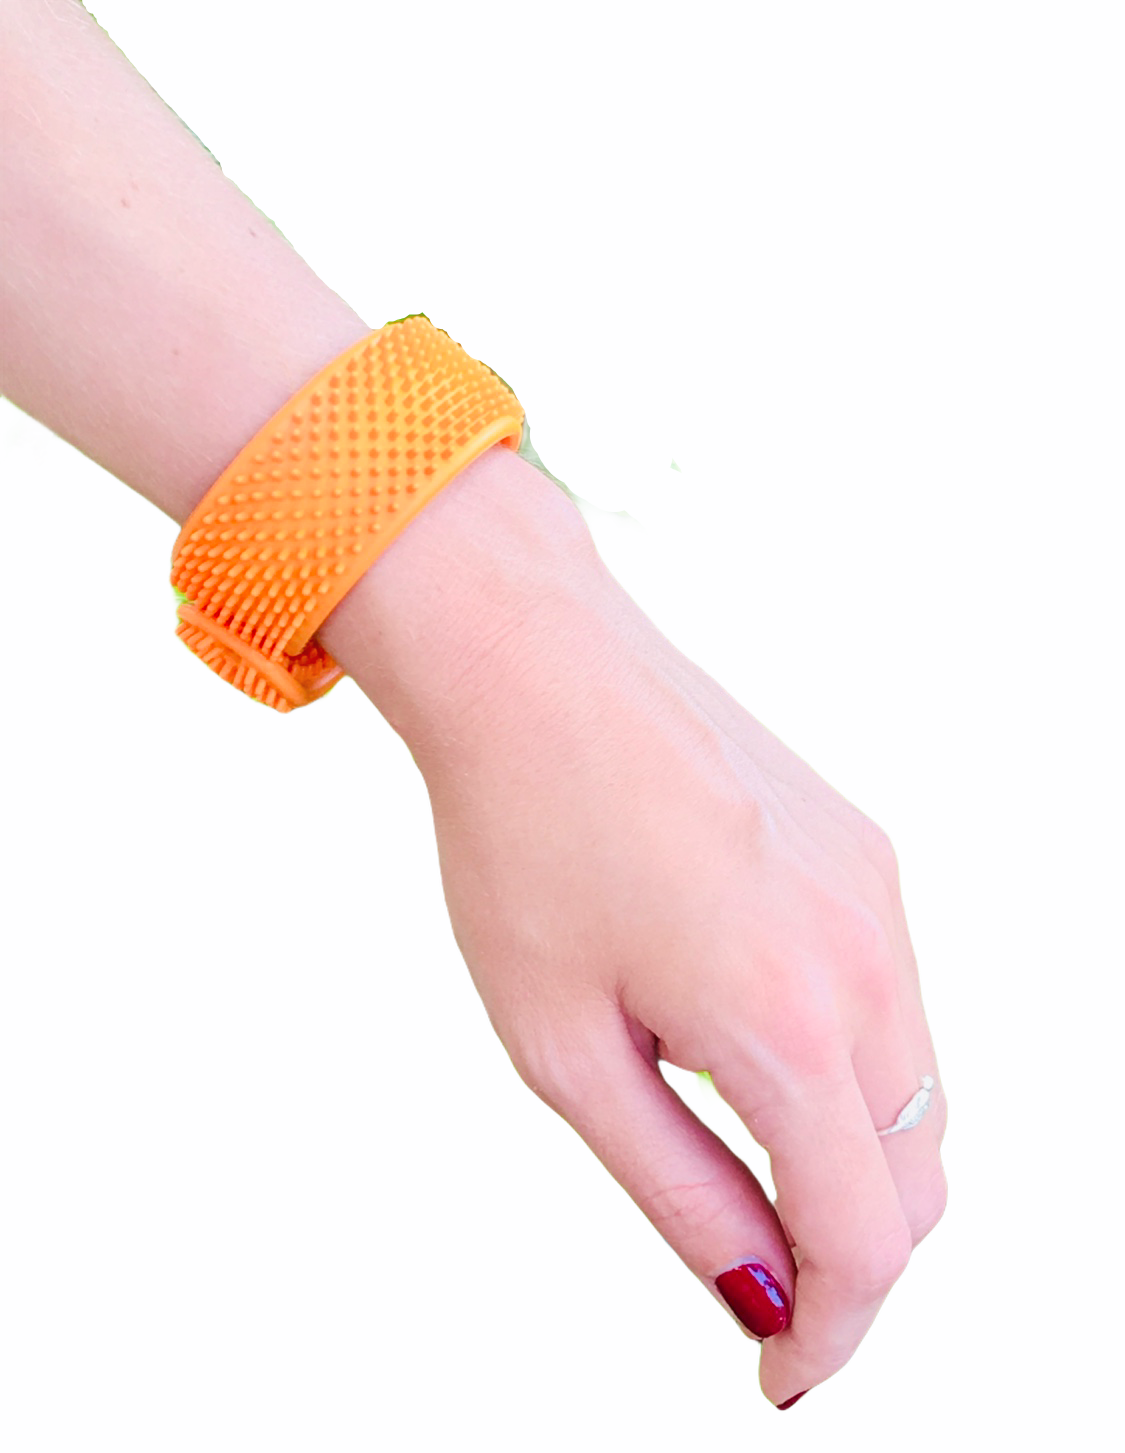 Sensory Genius Sensy Band wrapped around a persons wrist